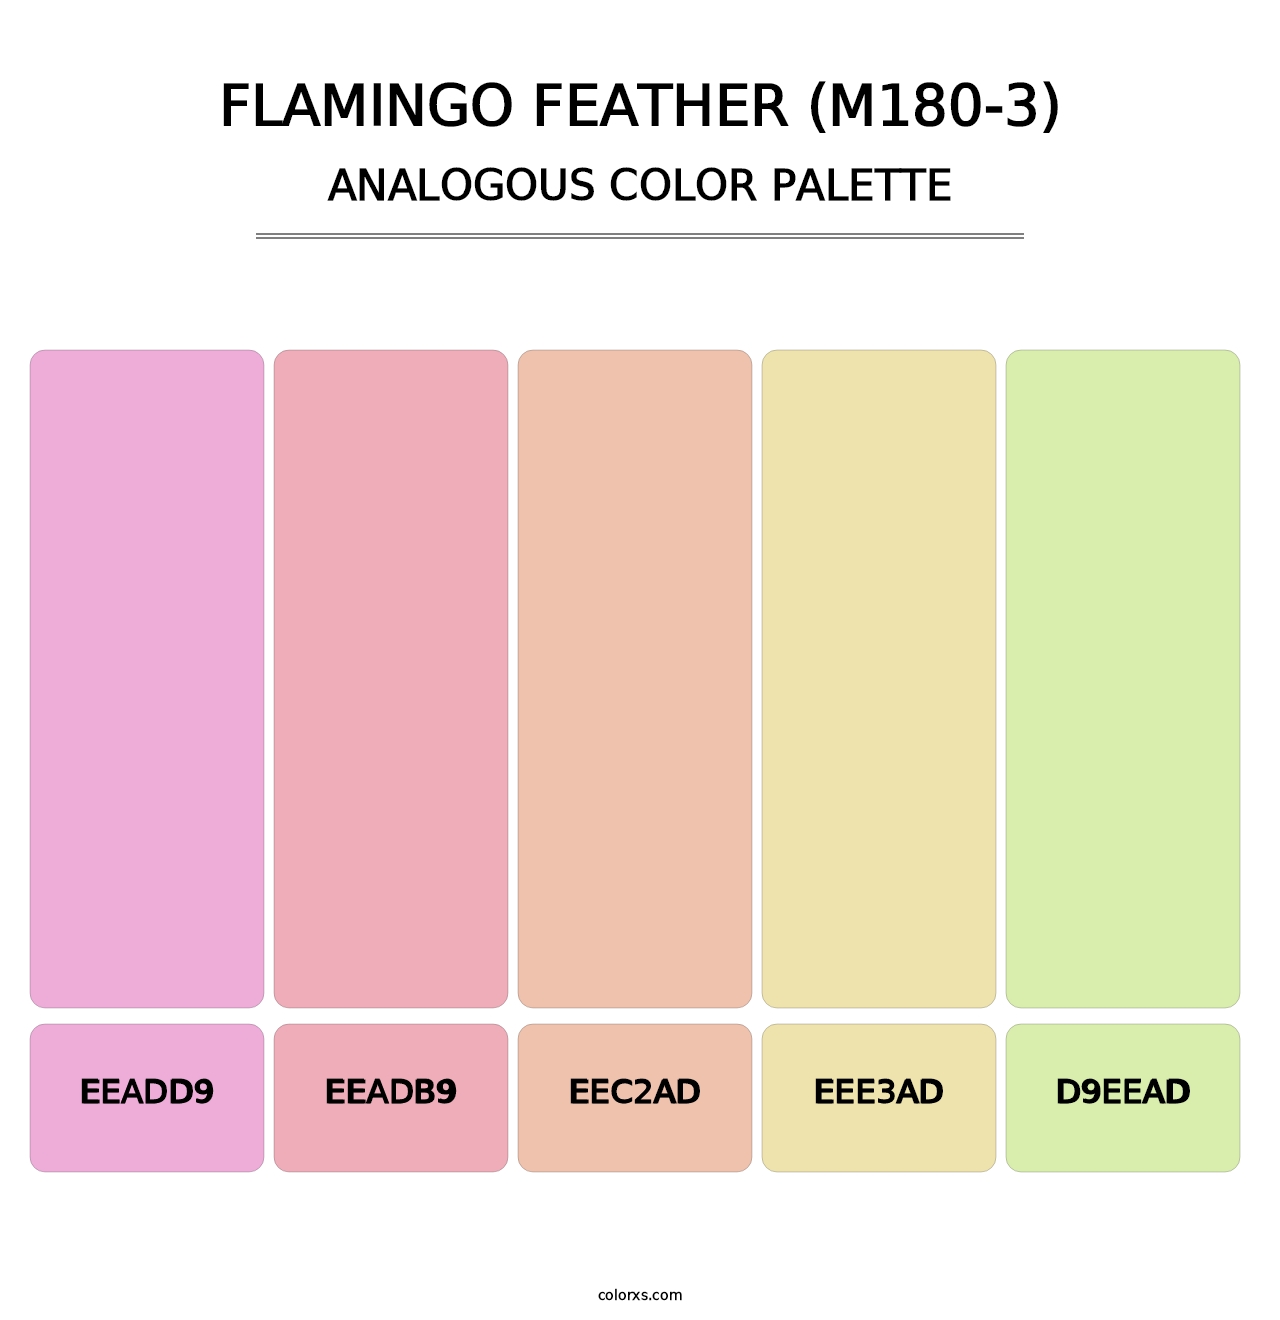 Flamingo Feather (M180-3) - Analogous Color Palette